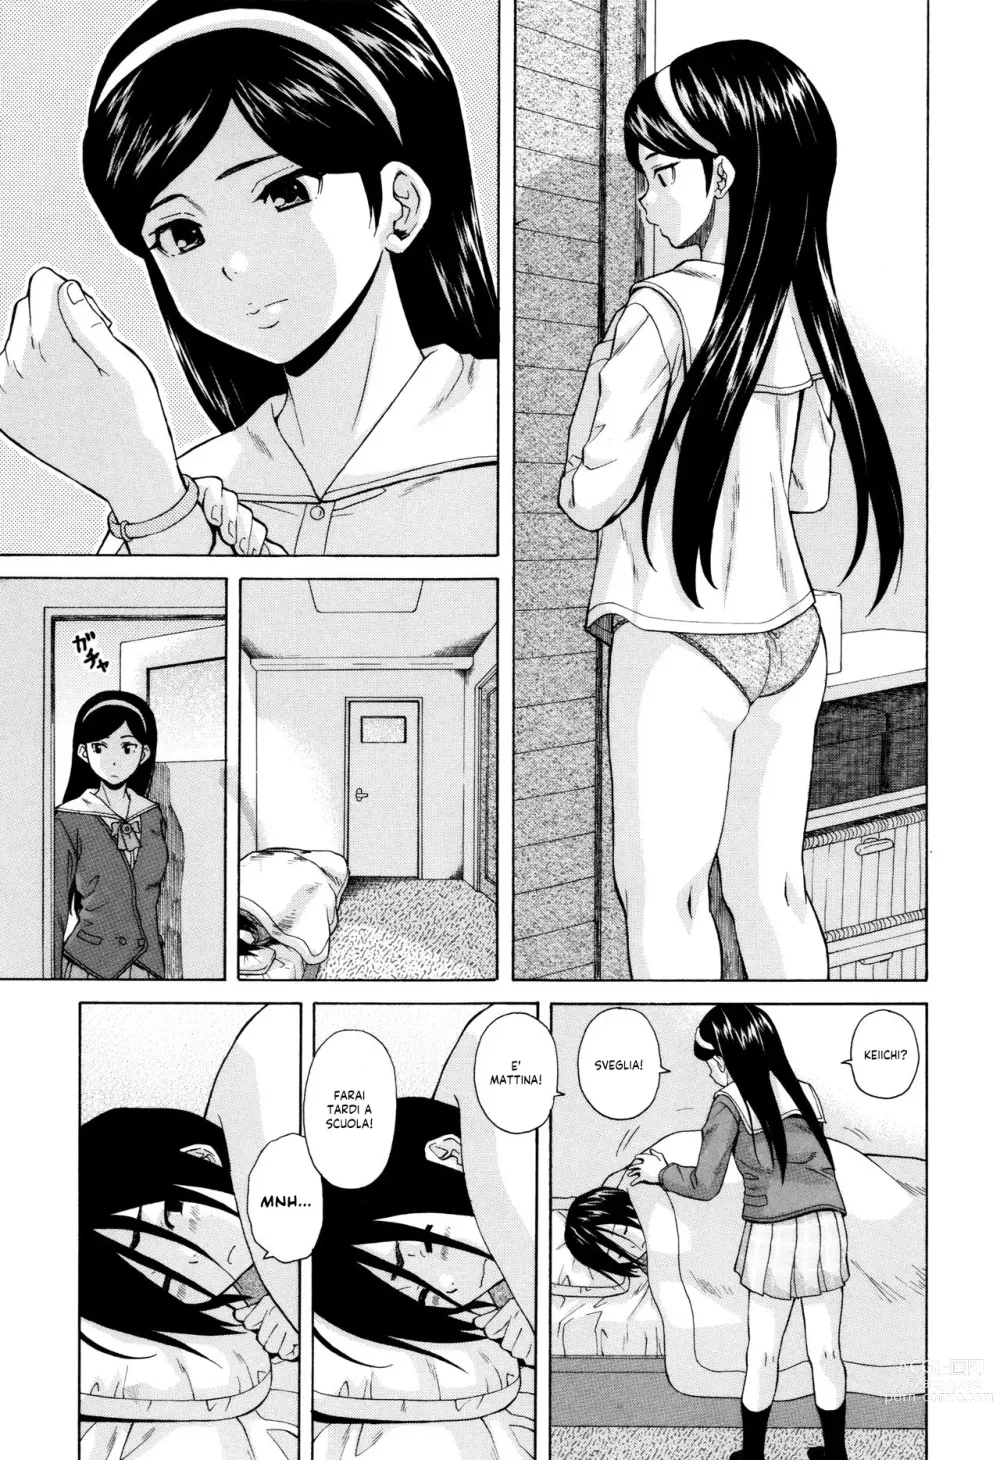 Page 6 of manga Segreti, Suicidi e Sorelle (decensored)